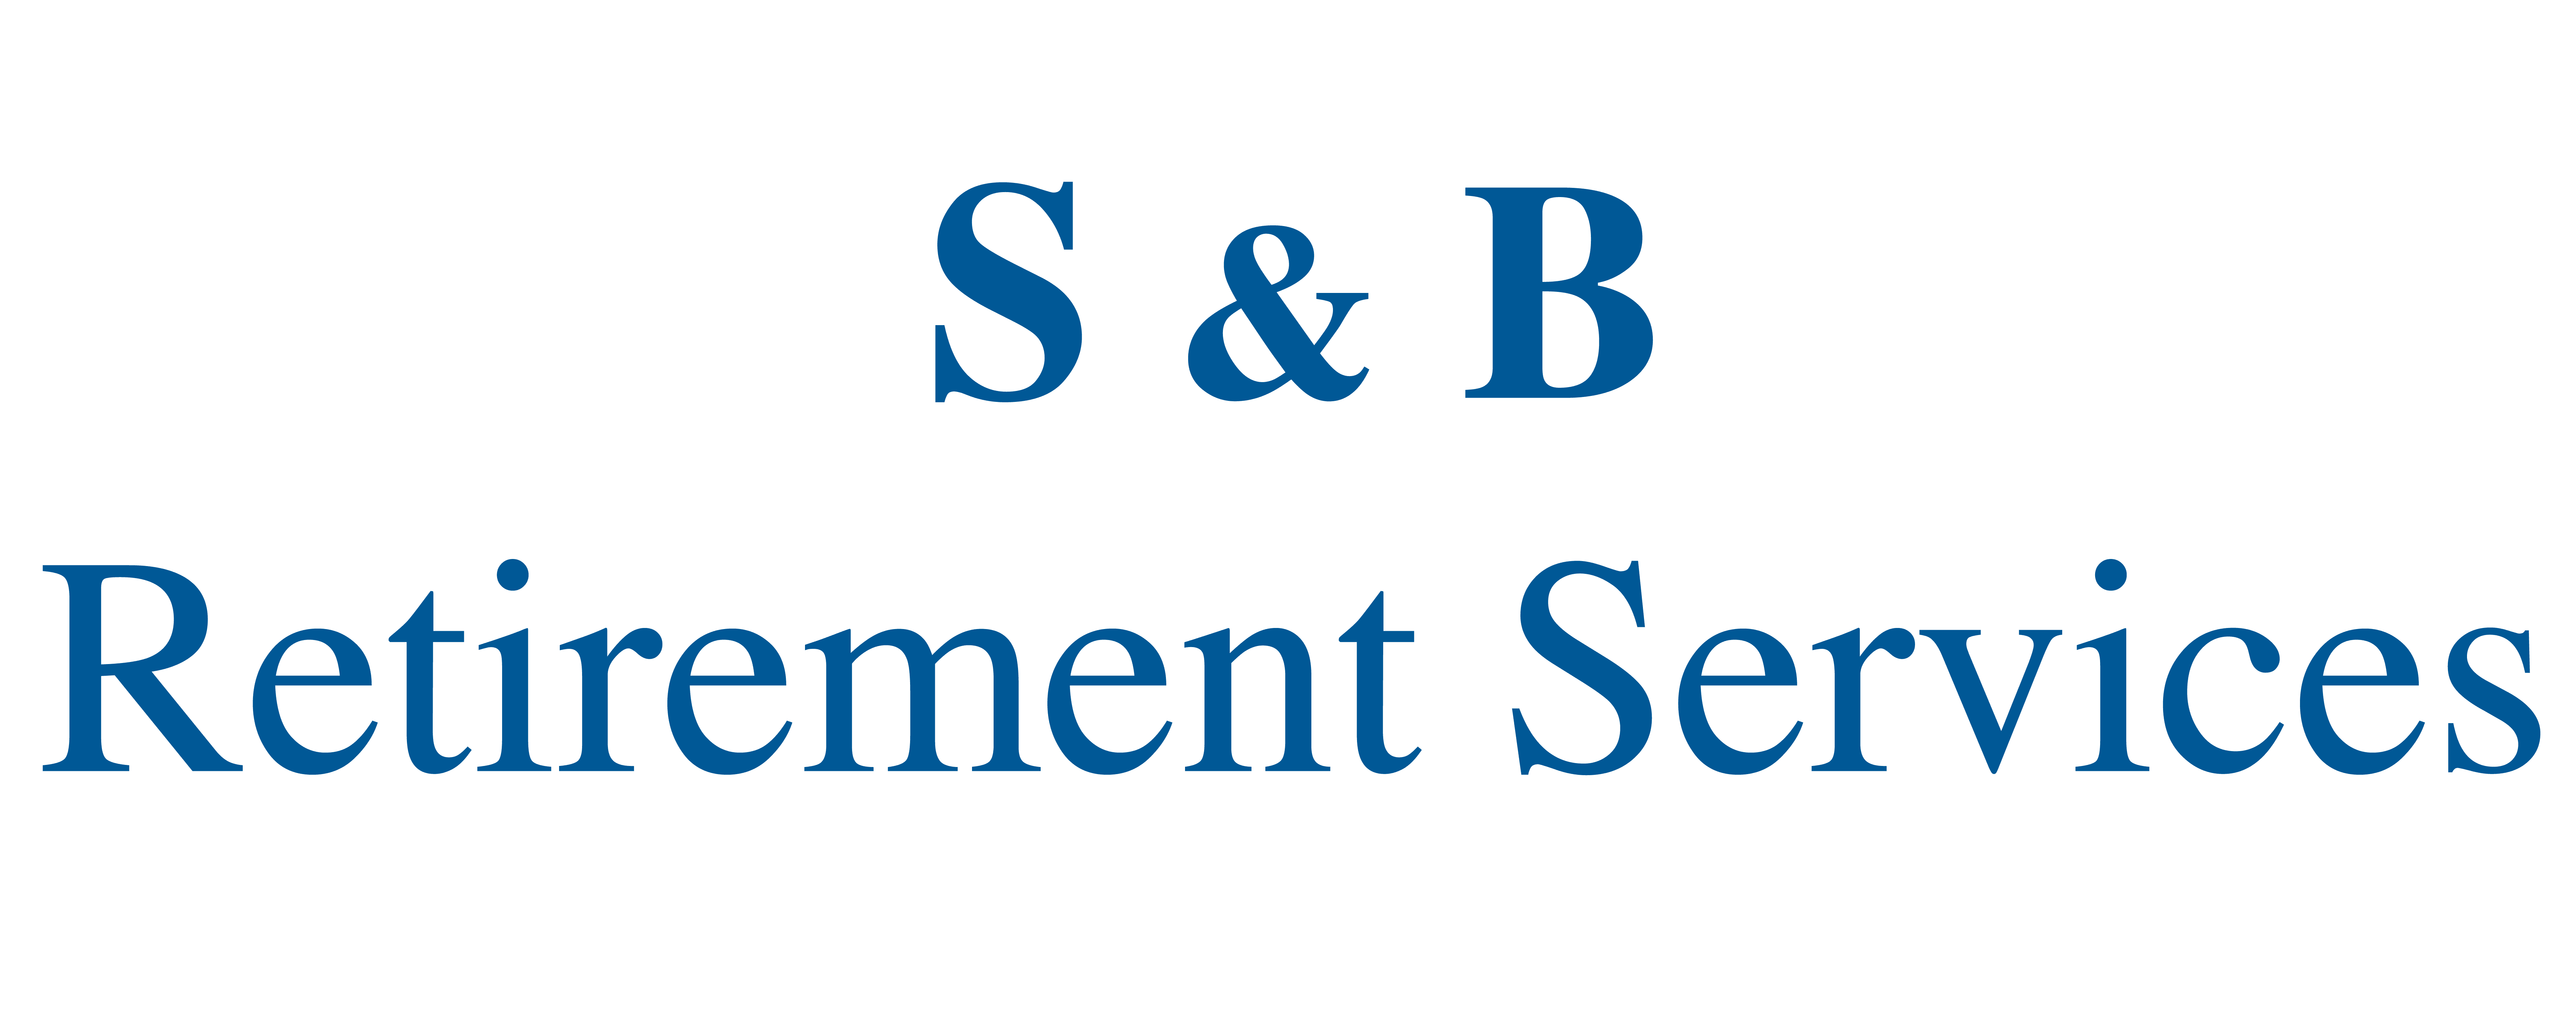 S & B Retirement Services